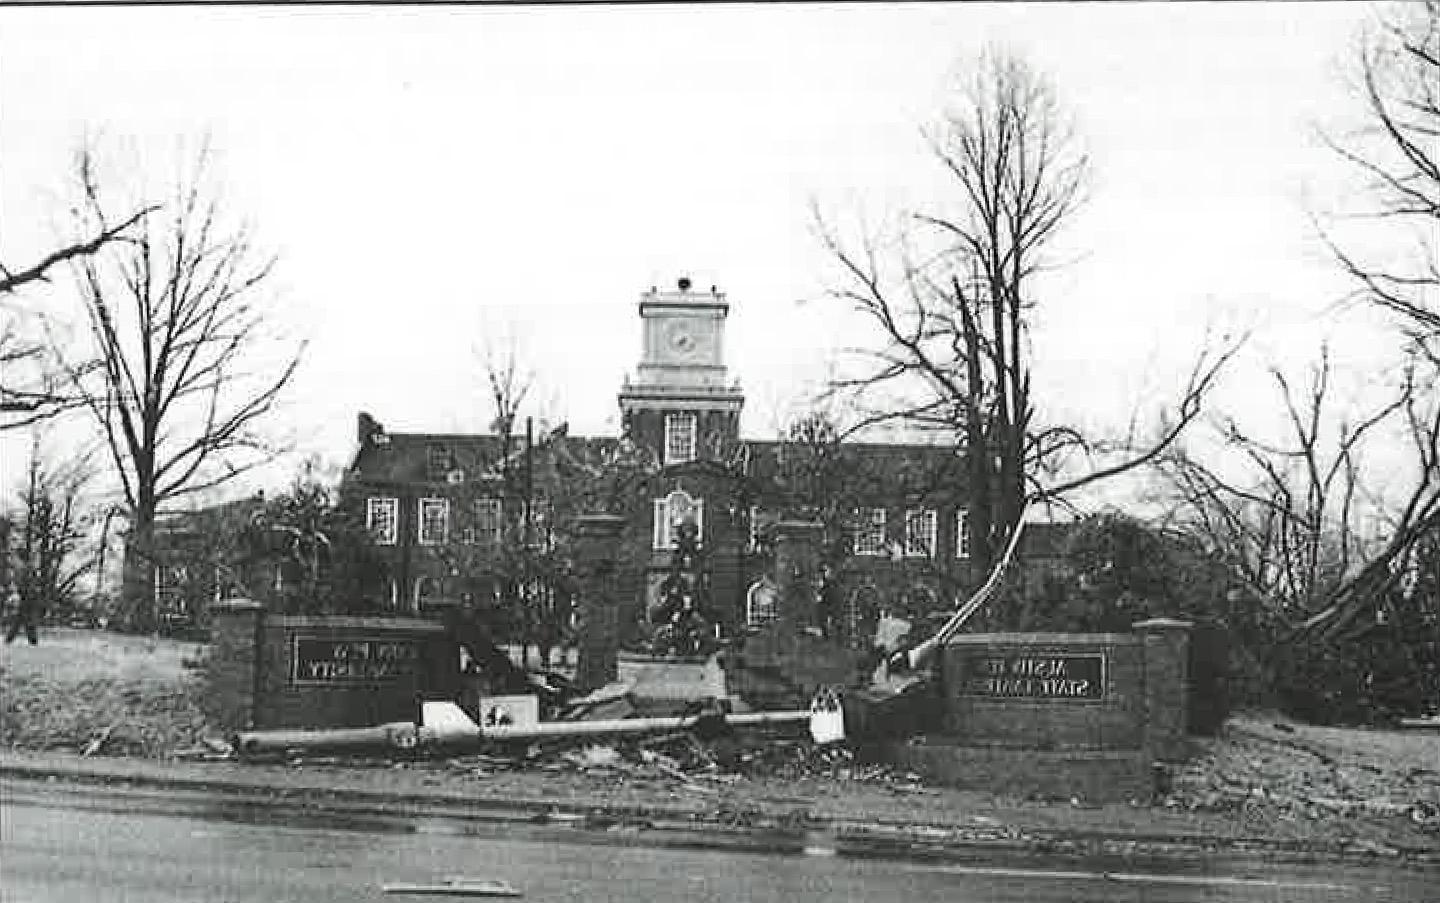 The Browning, pictured, Clement, Harned, 哈维尔和阿奇伍德建筑在1月11日的一次地震中严重受损. 1999年22日，龙卷风袭击了克拉克斯维尔.